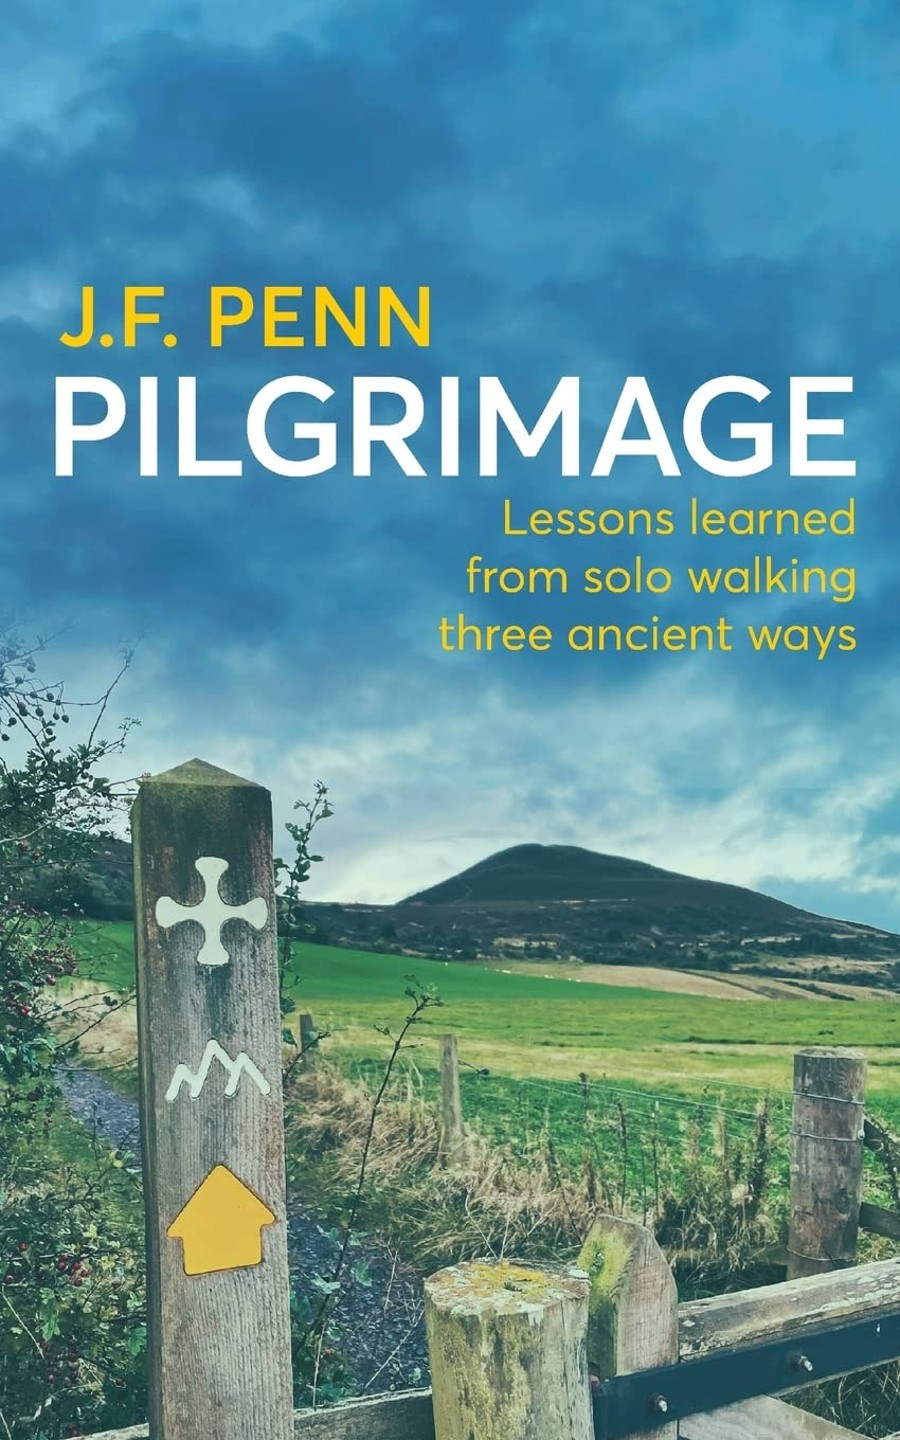 pilgrimage walking three ancient ways